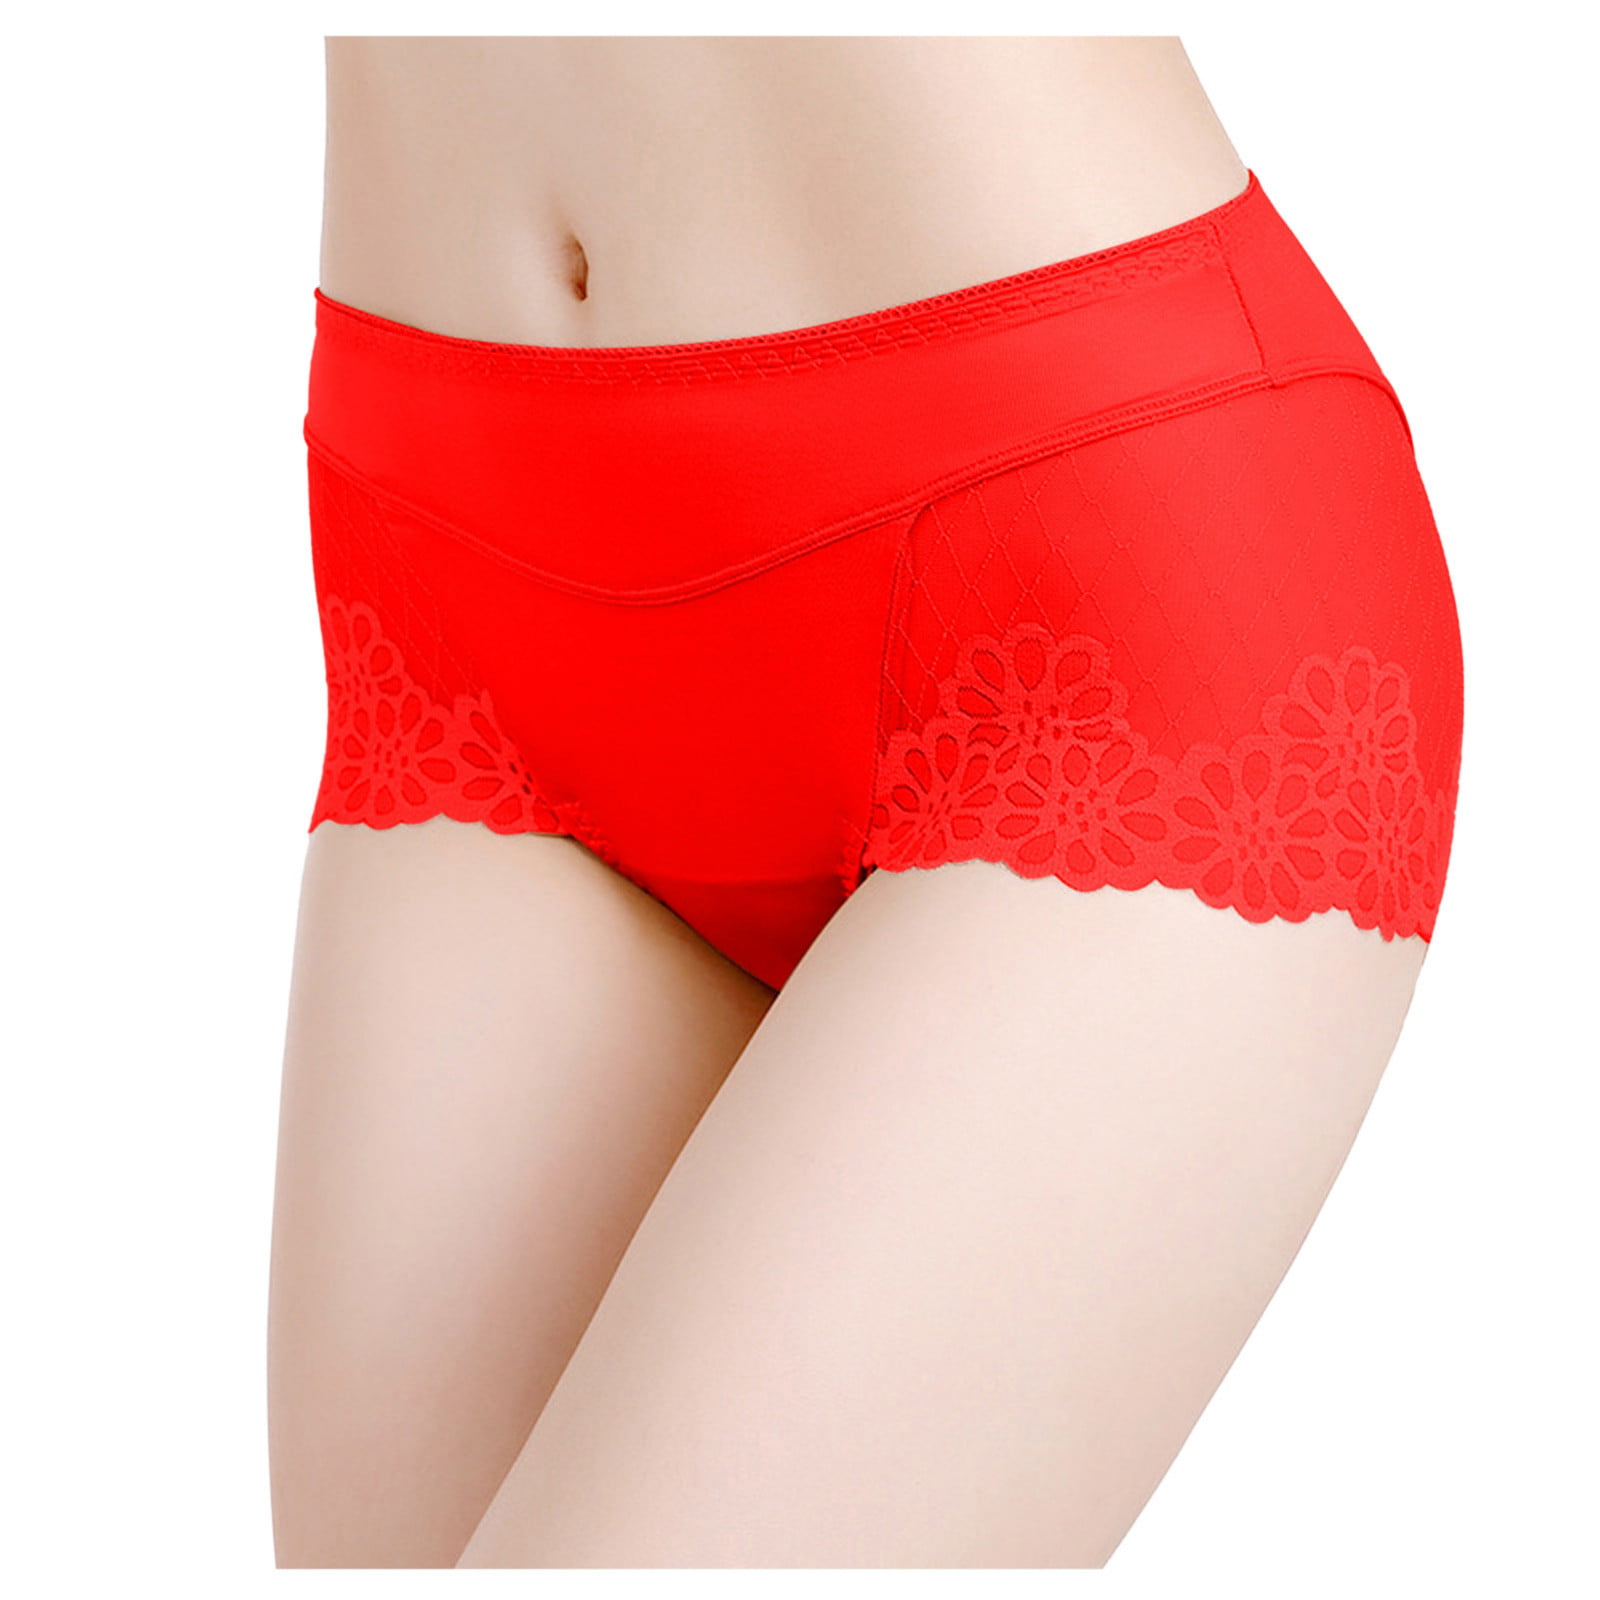 Mrat Seamless Panties Cotton Stretch Briefs Soft Ladies